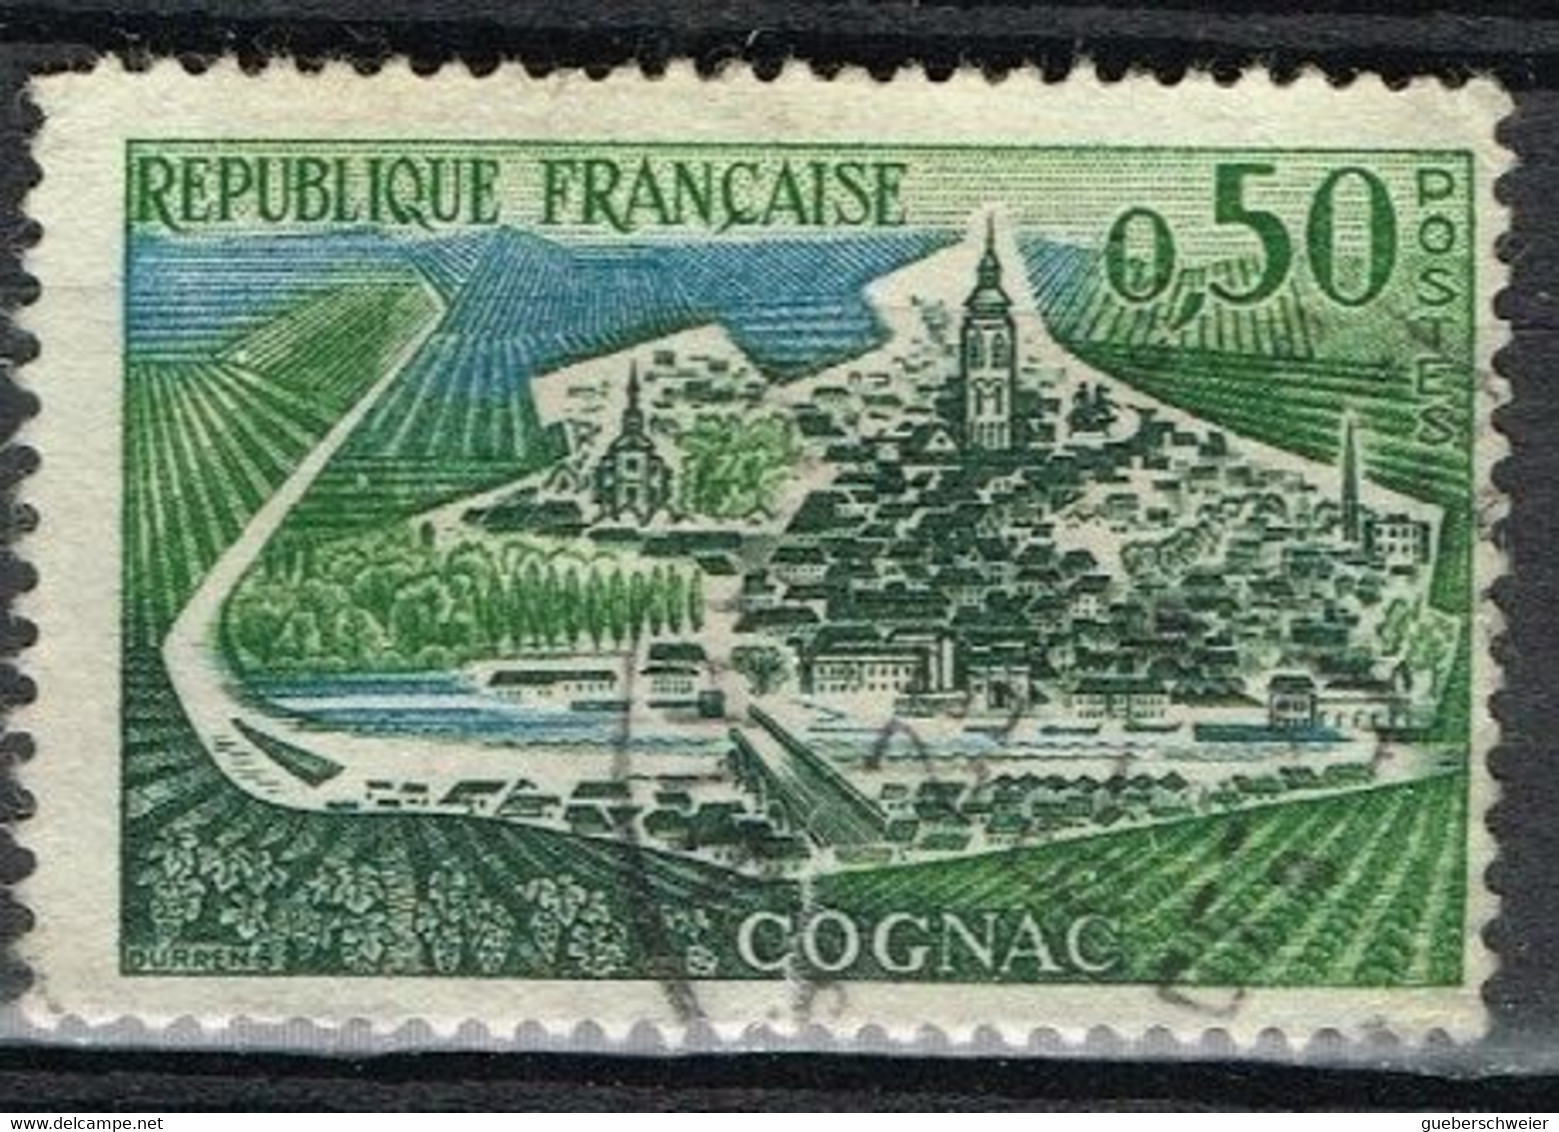 FR VAR 54 - FRANCE N° 1314d Obl. Variété Digue Interrompue - Used Stamps